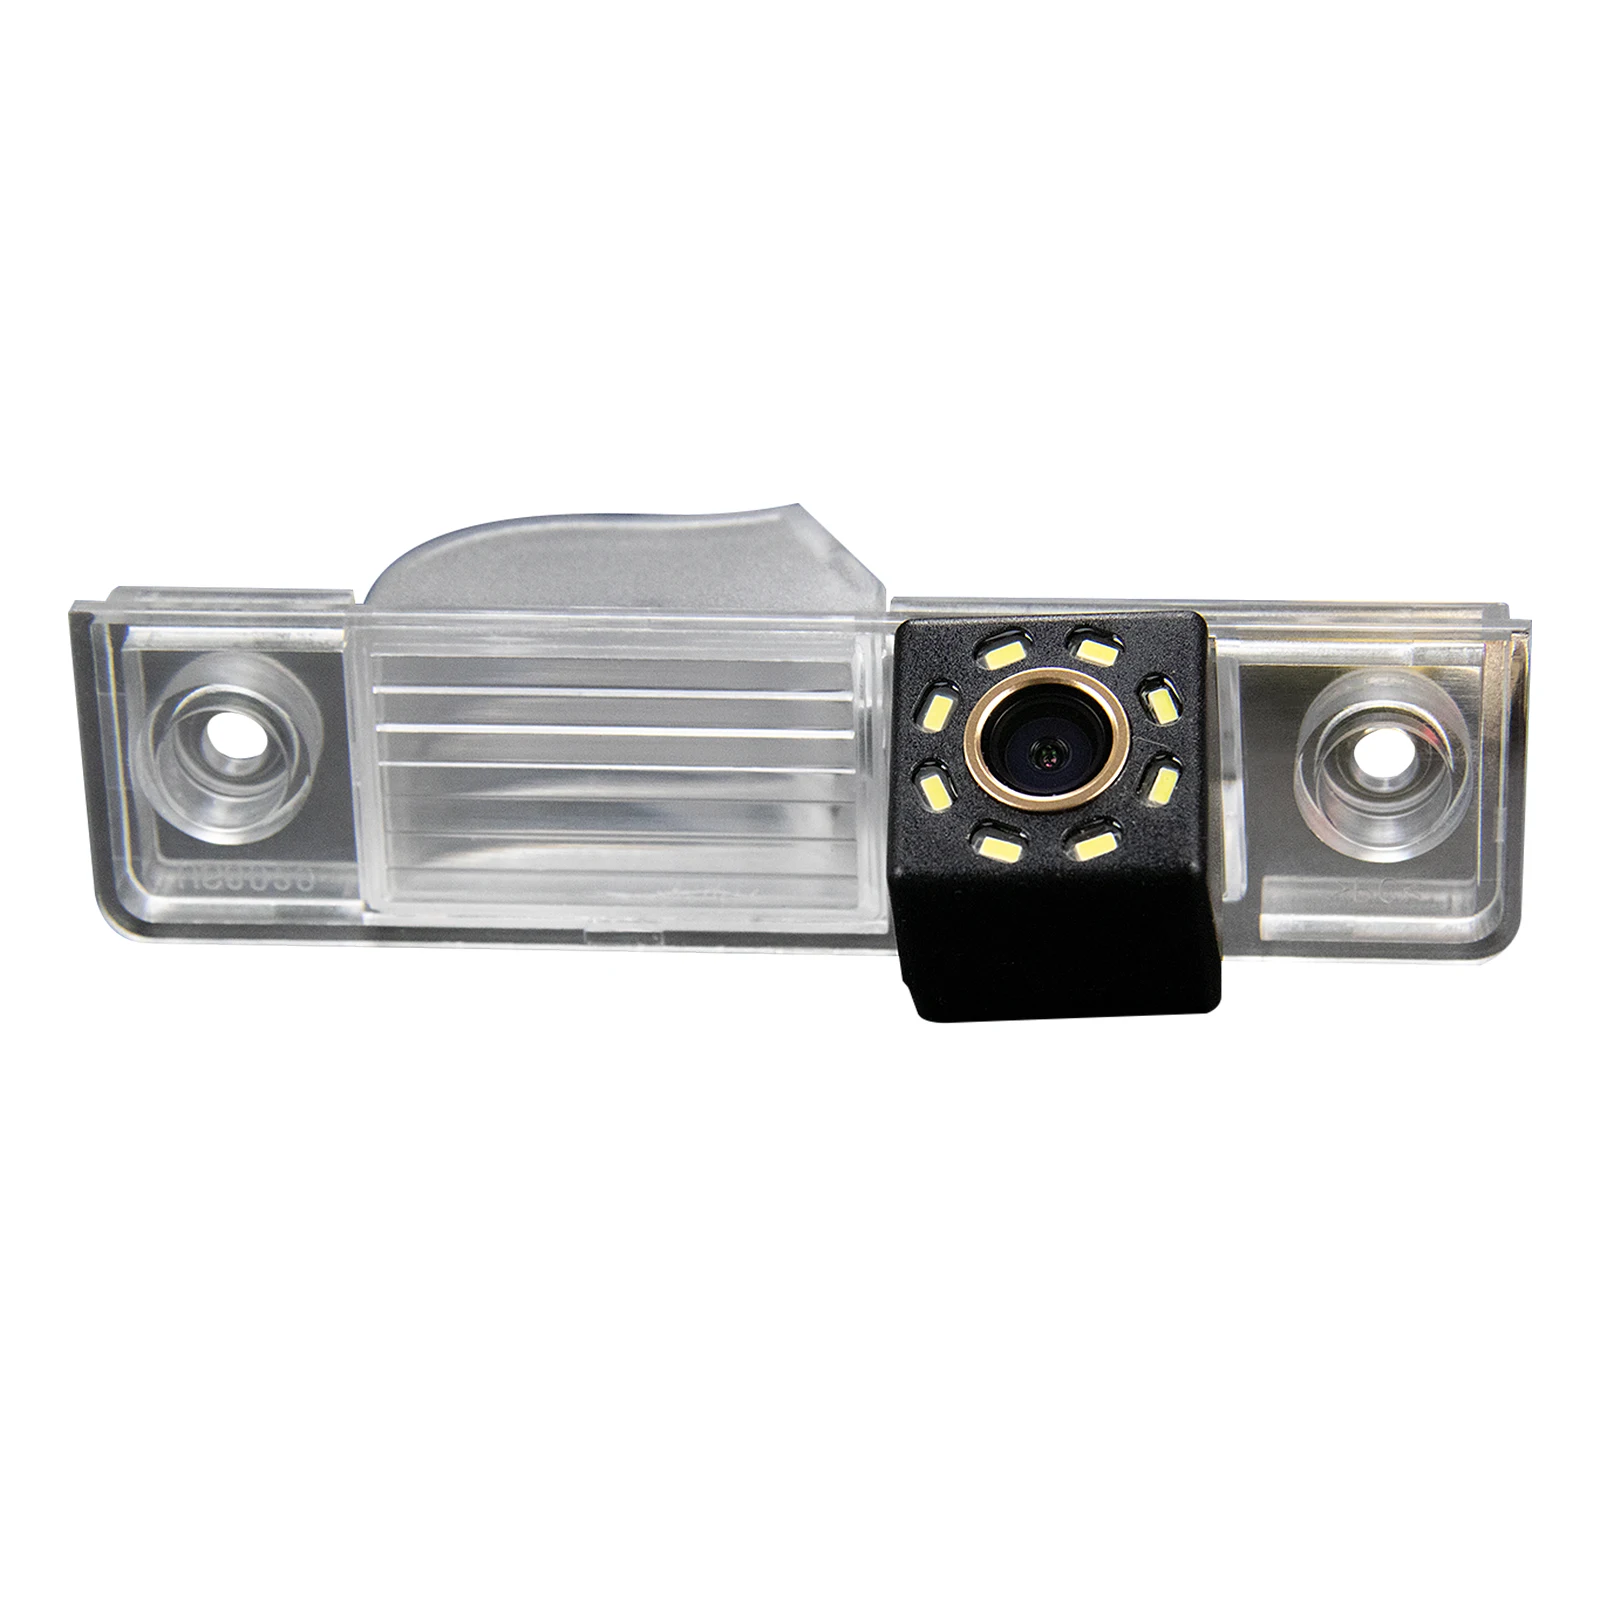 

Камера заднего вида 2017 HD, водонепроницаемая, для гаражей Morris MG GT 2015-резервная камера водонепроницаемая